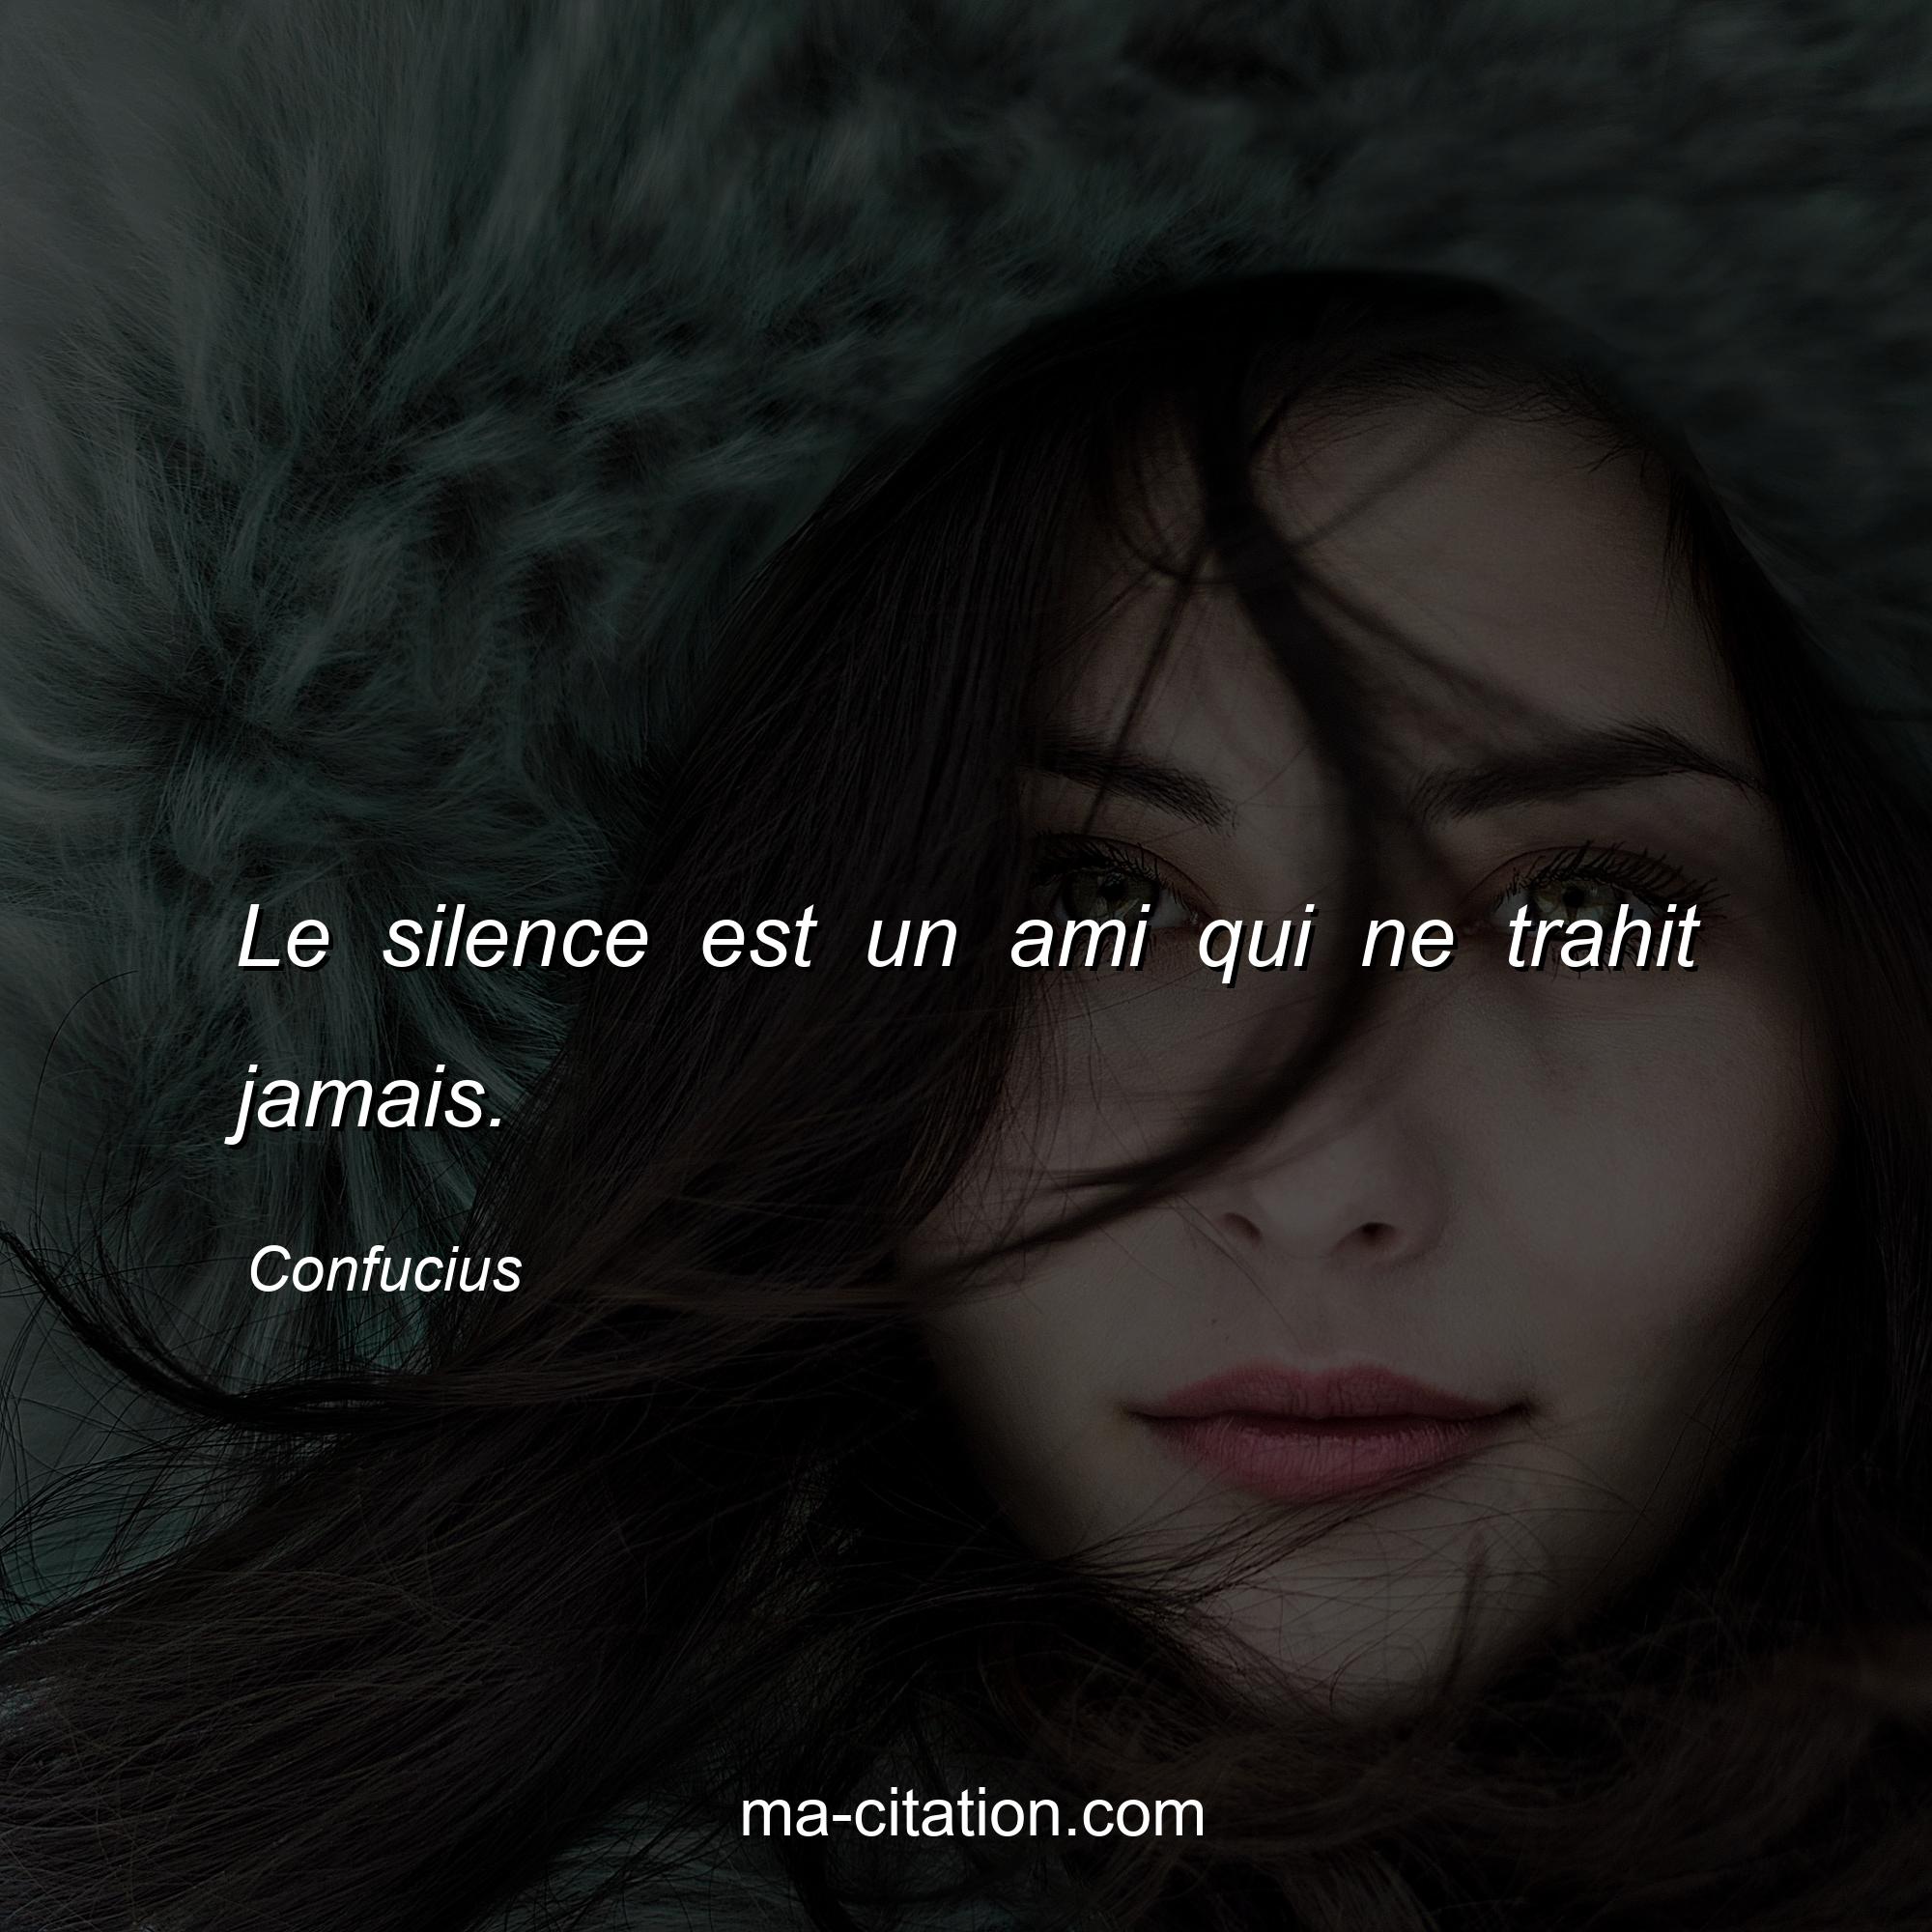 Confucius : Le silence est un ami qui ne trahit jamais.